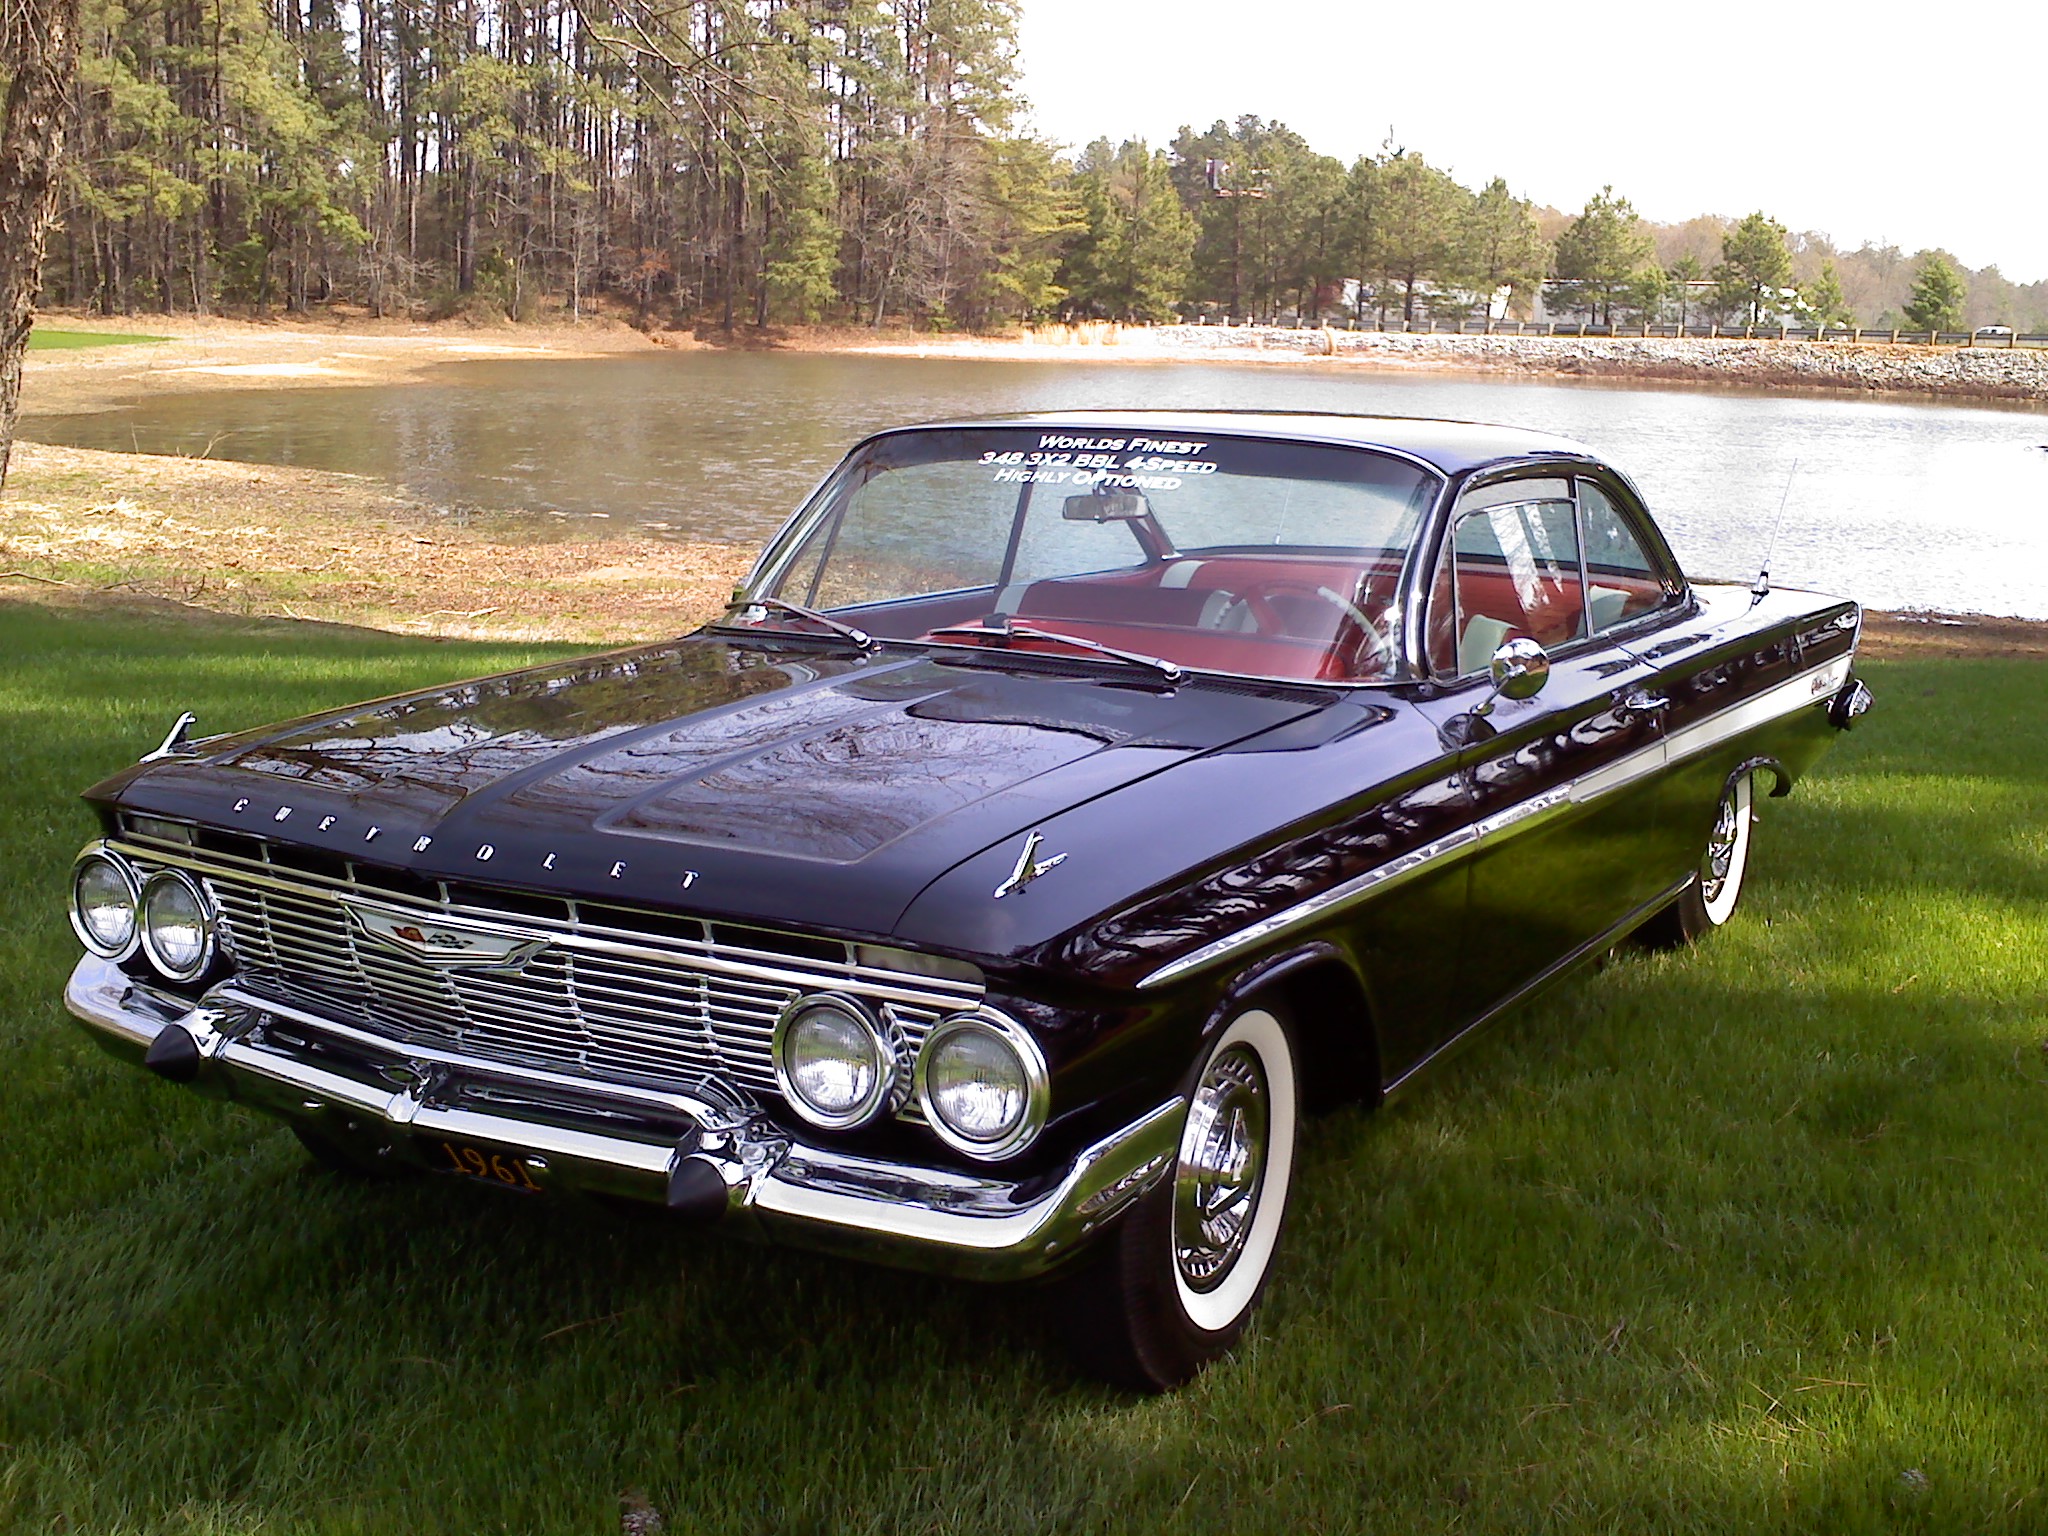 1961 Chevy Impala Bubbletop